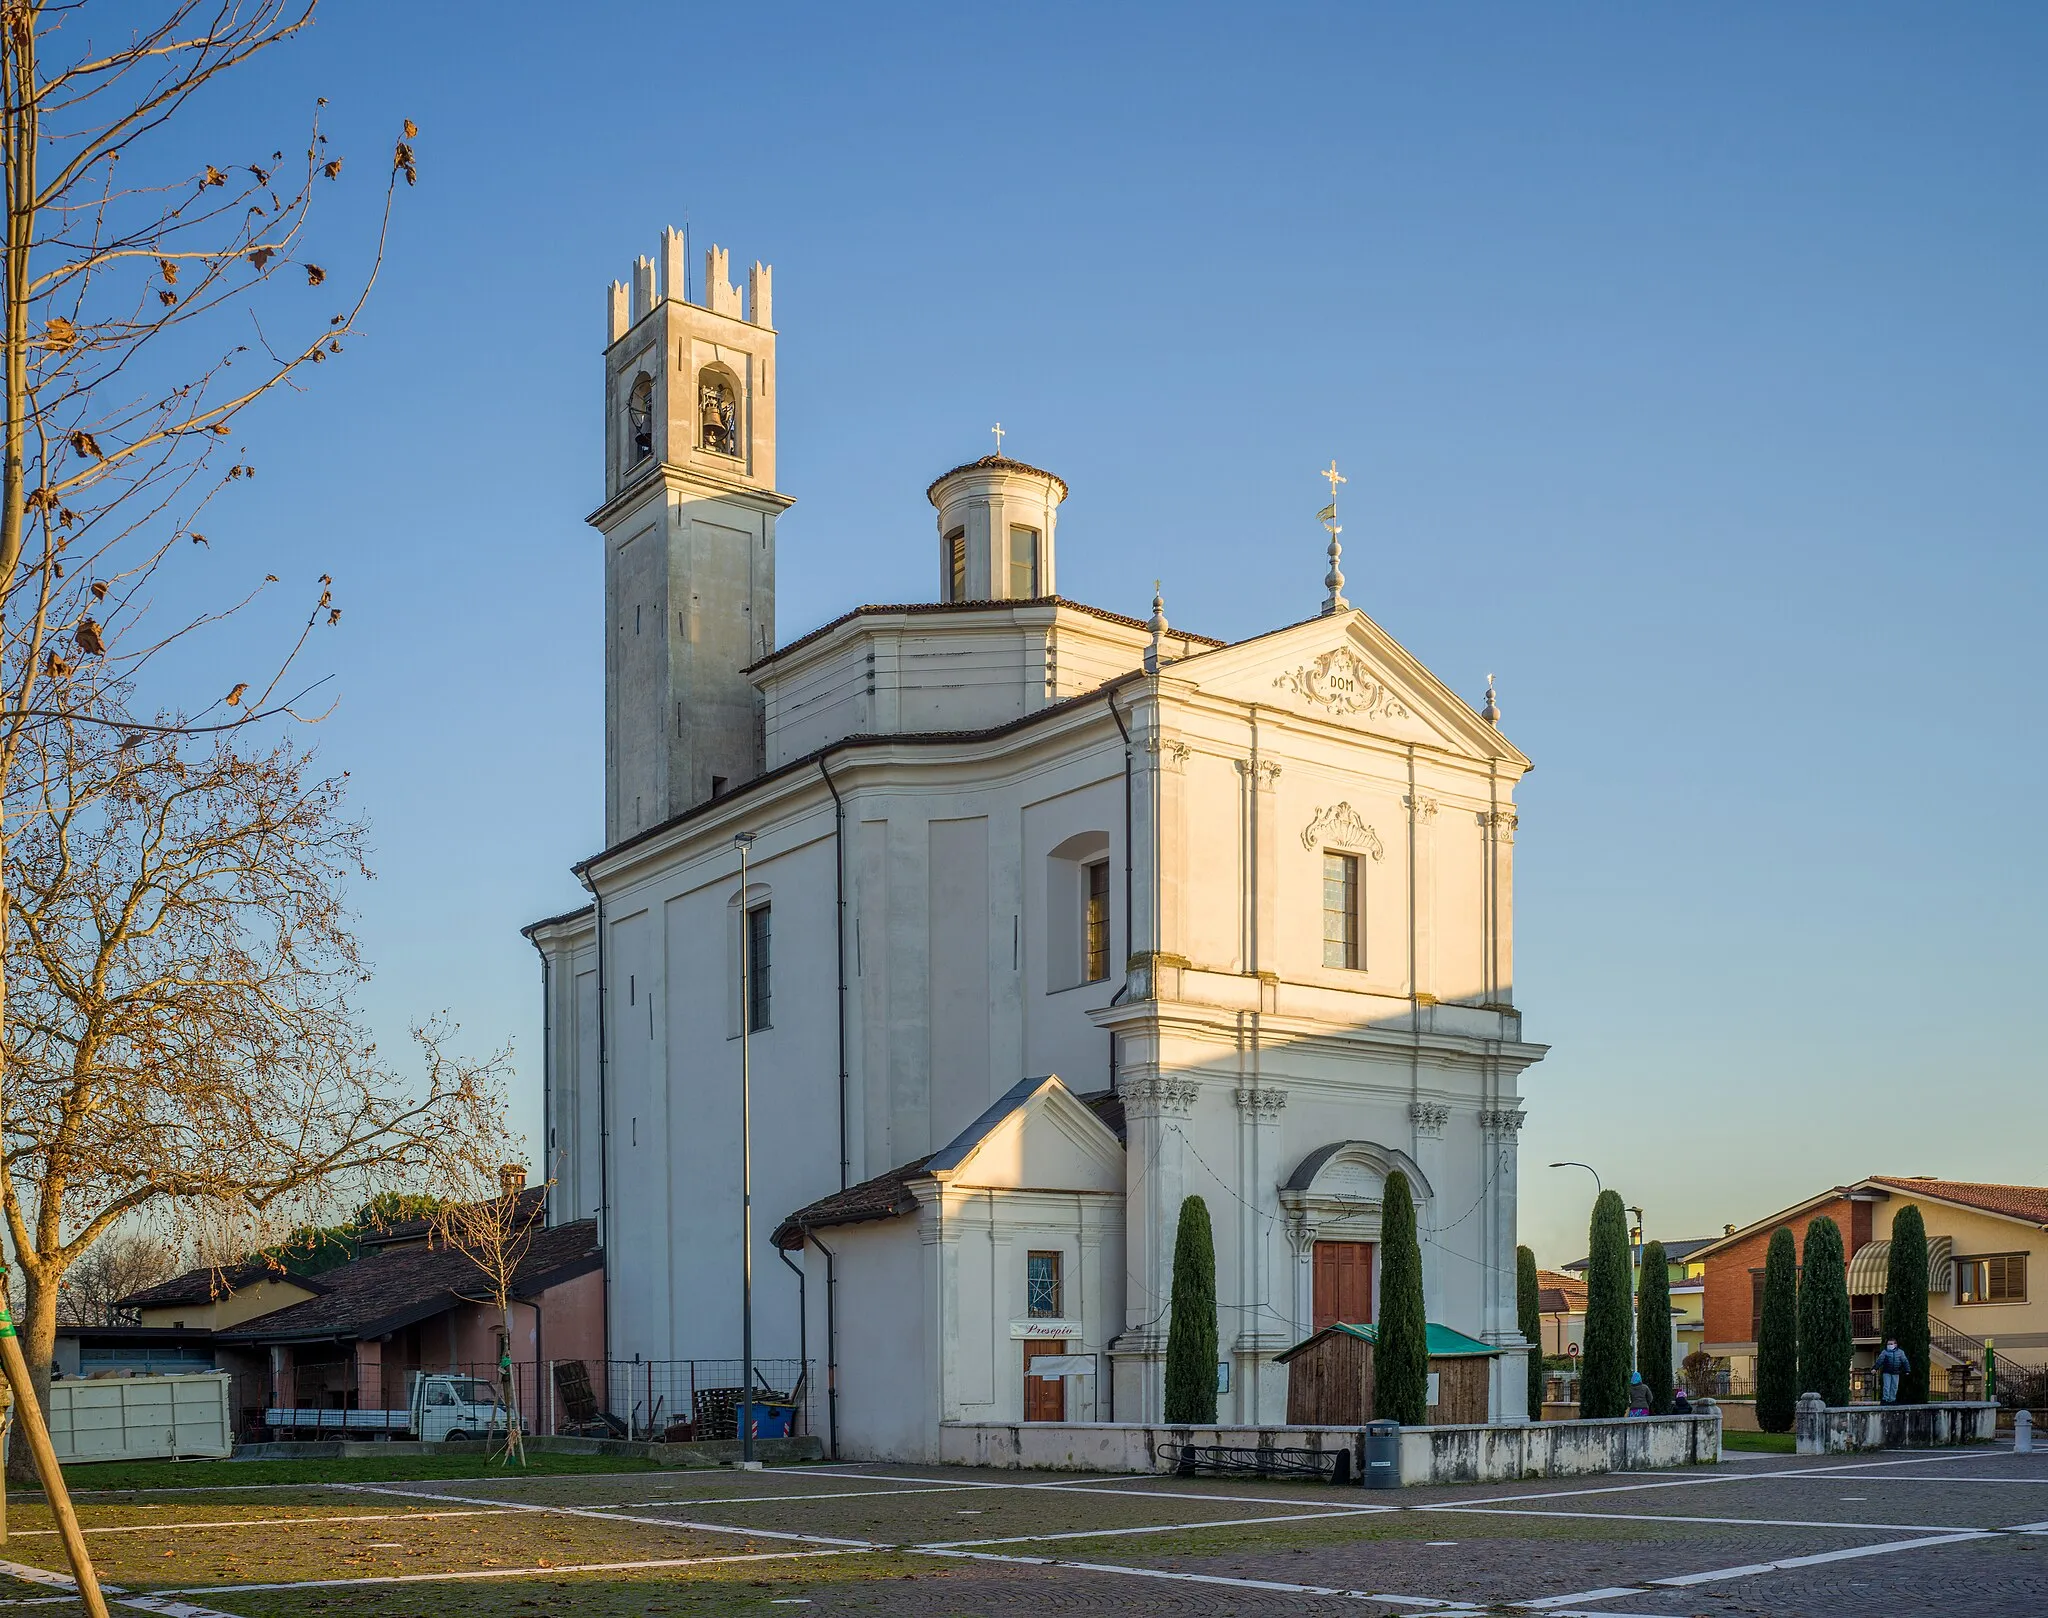 Photo showing: Facade of the Chiesa di San Silvestro church in Folzano, Brescia.